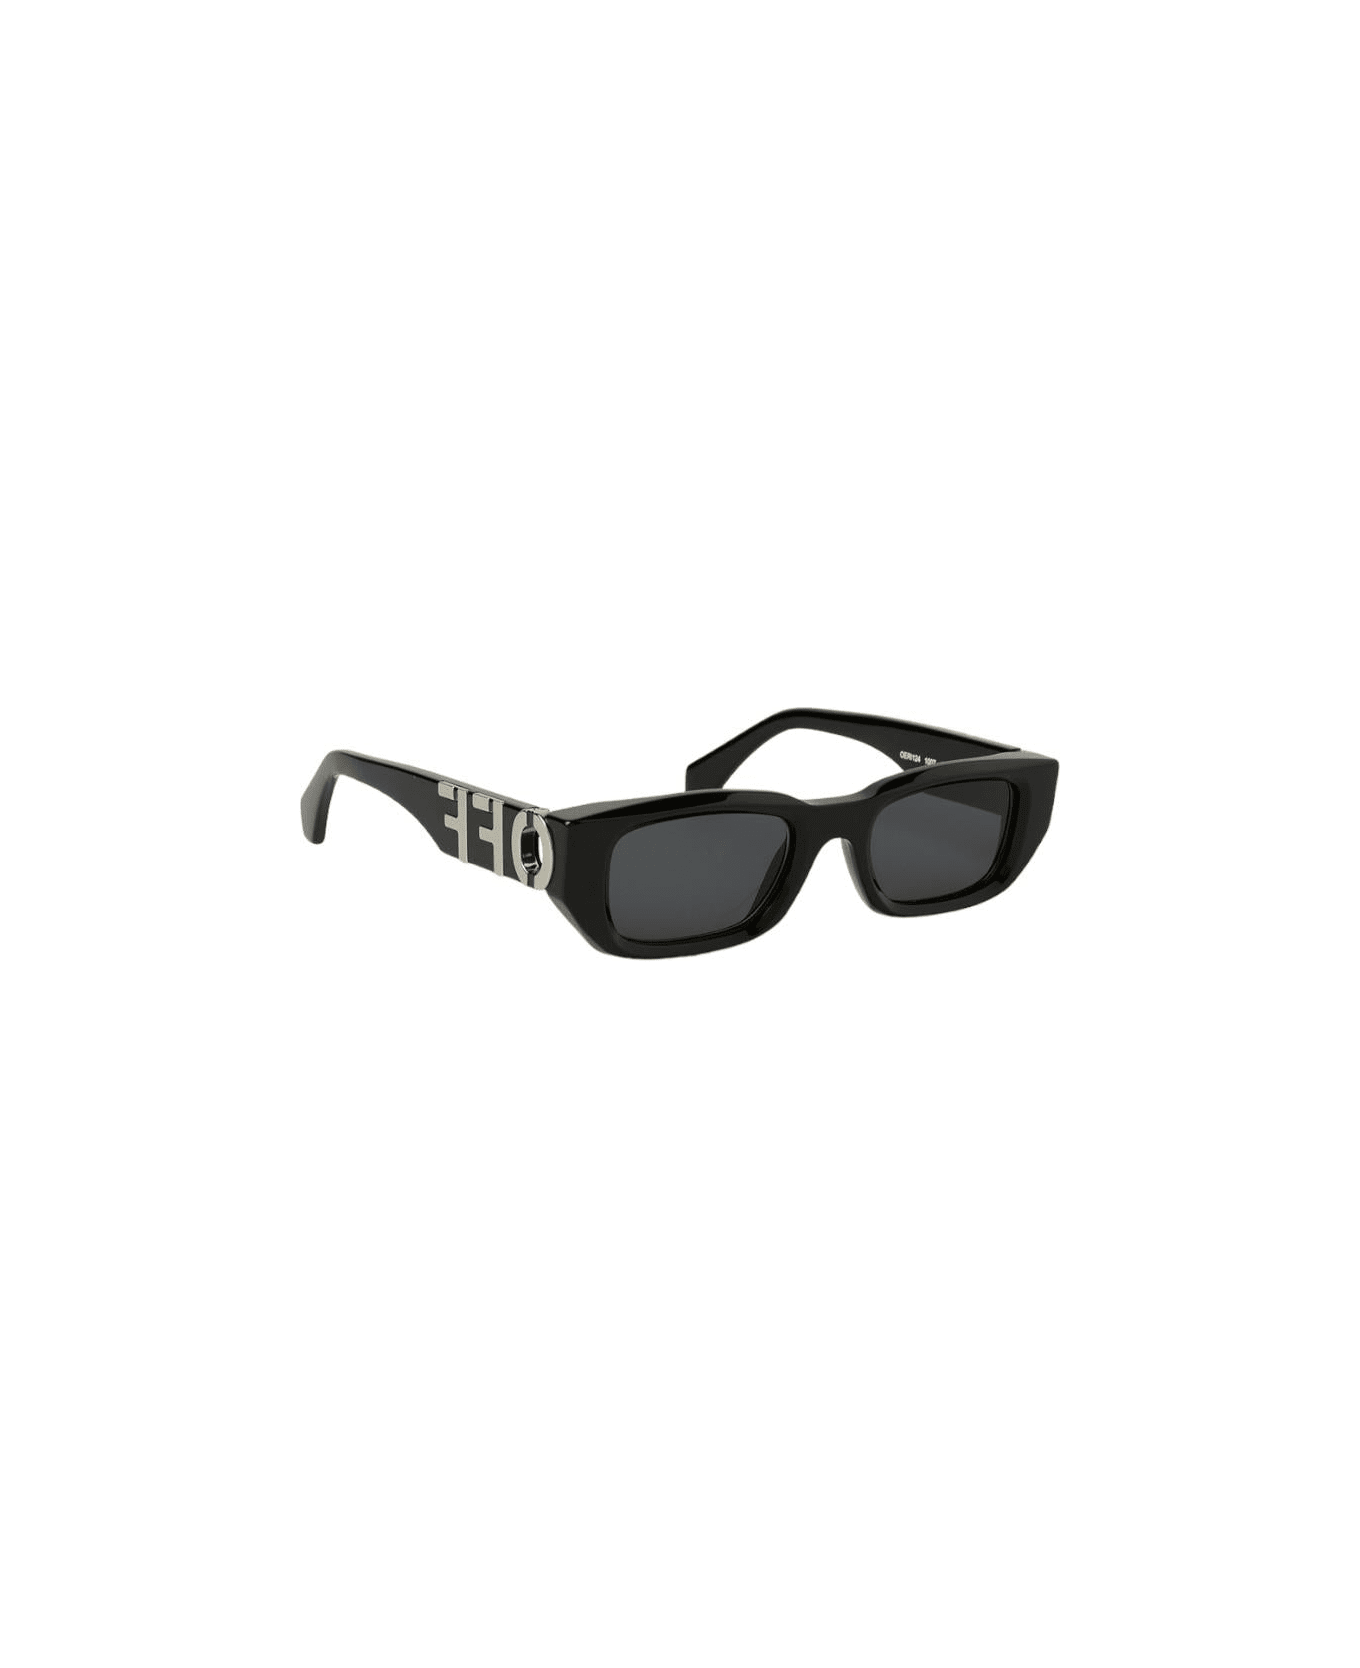 Off-White Fillmore - Oeri124 Sunglasses